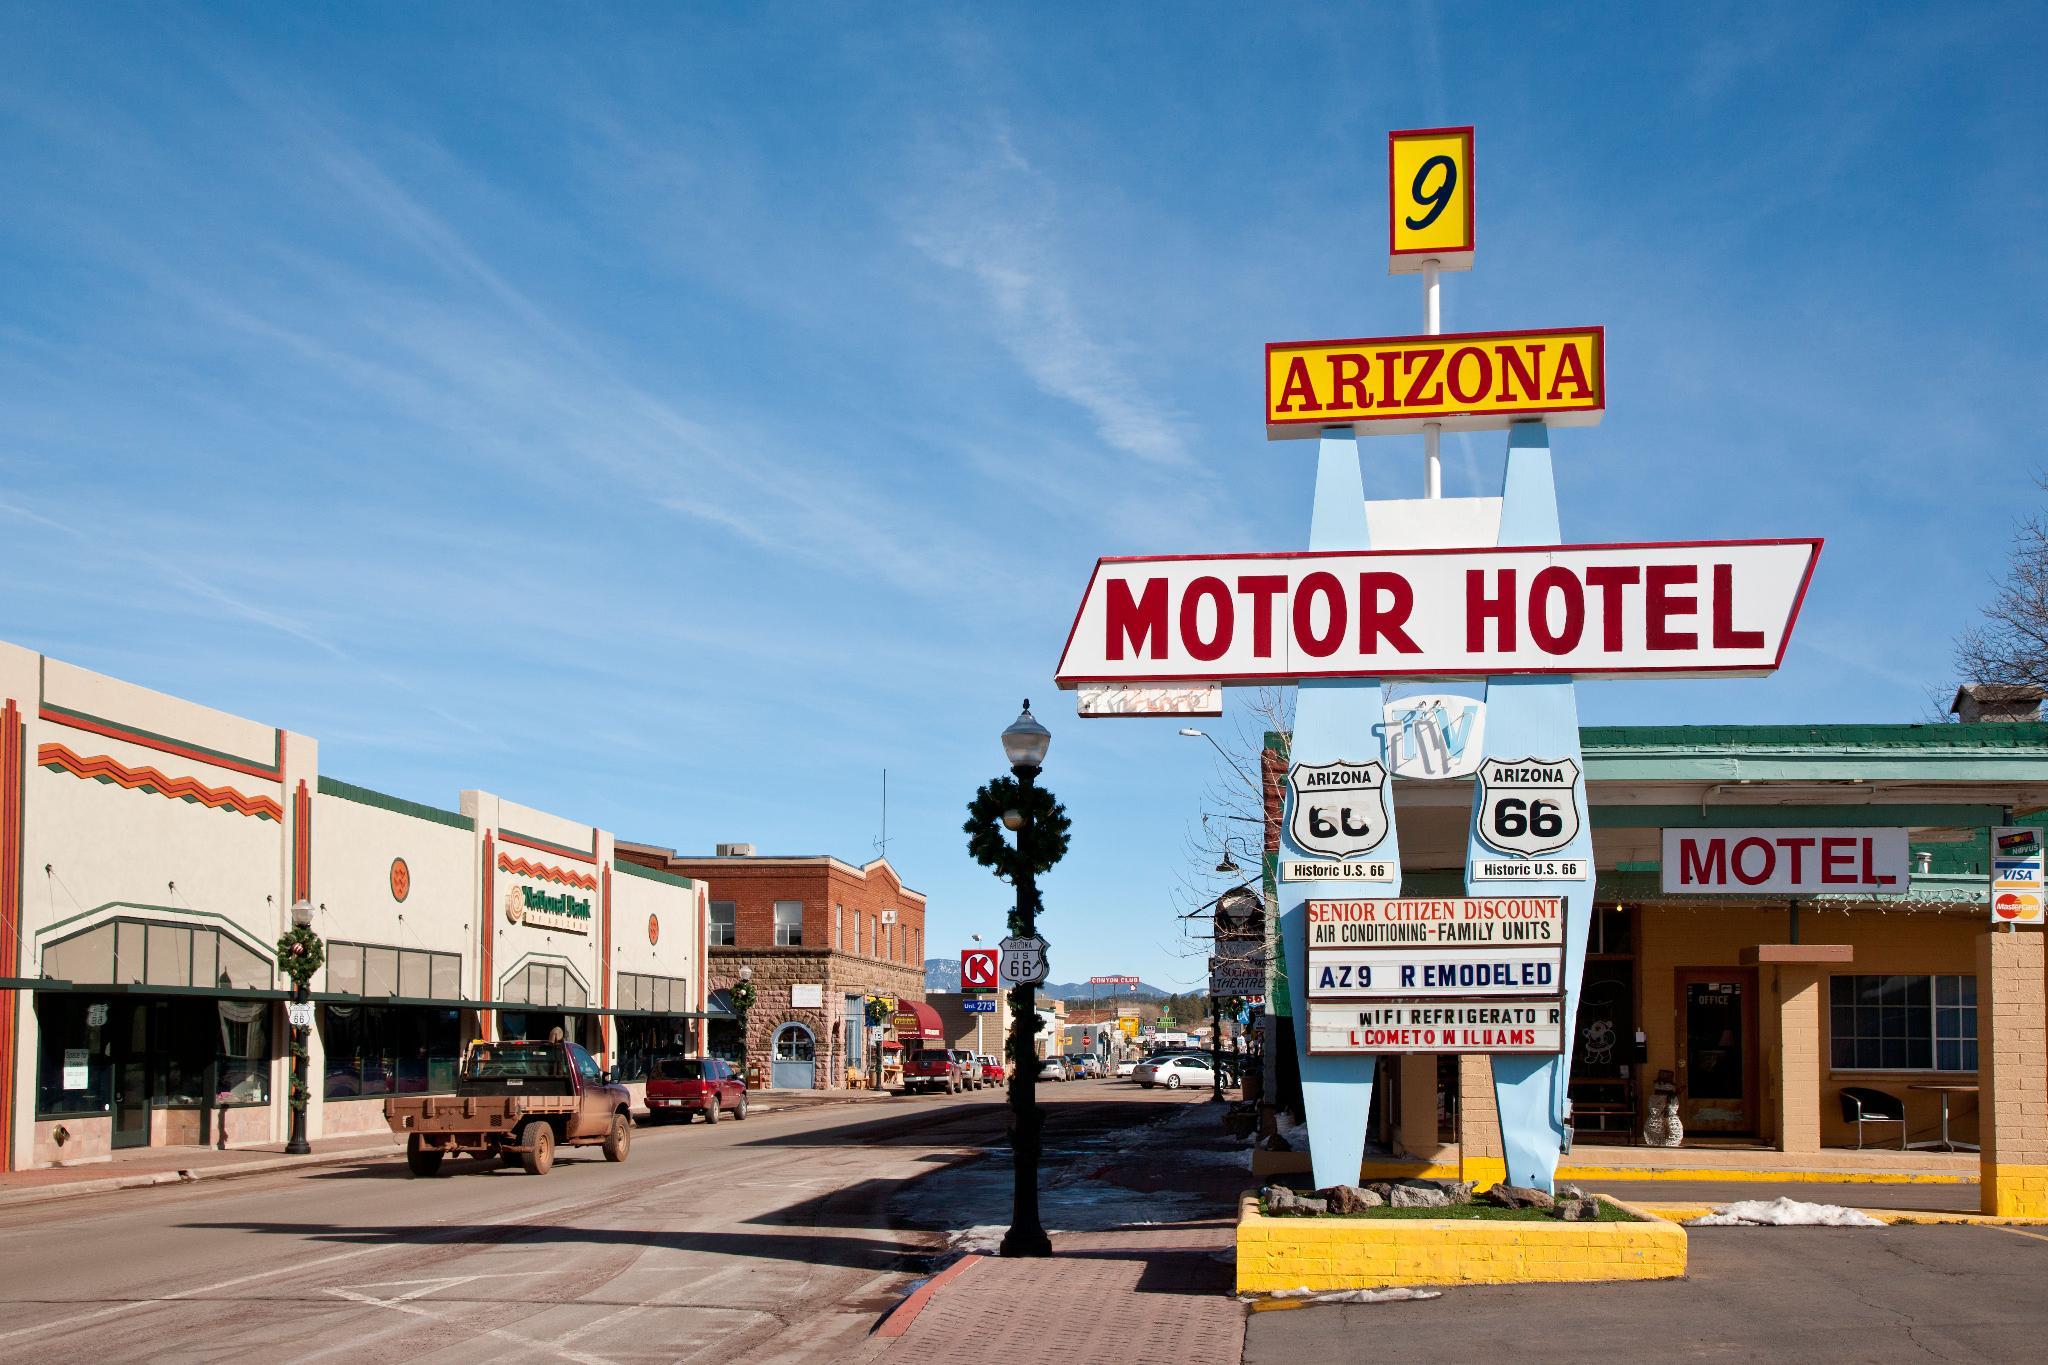 Arizona 9 Motor Hotel - 윌리엄스